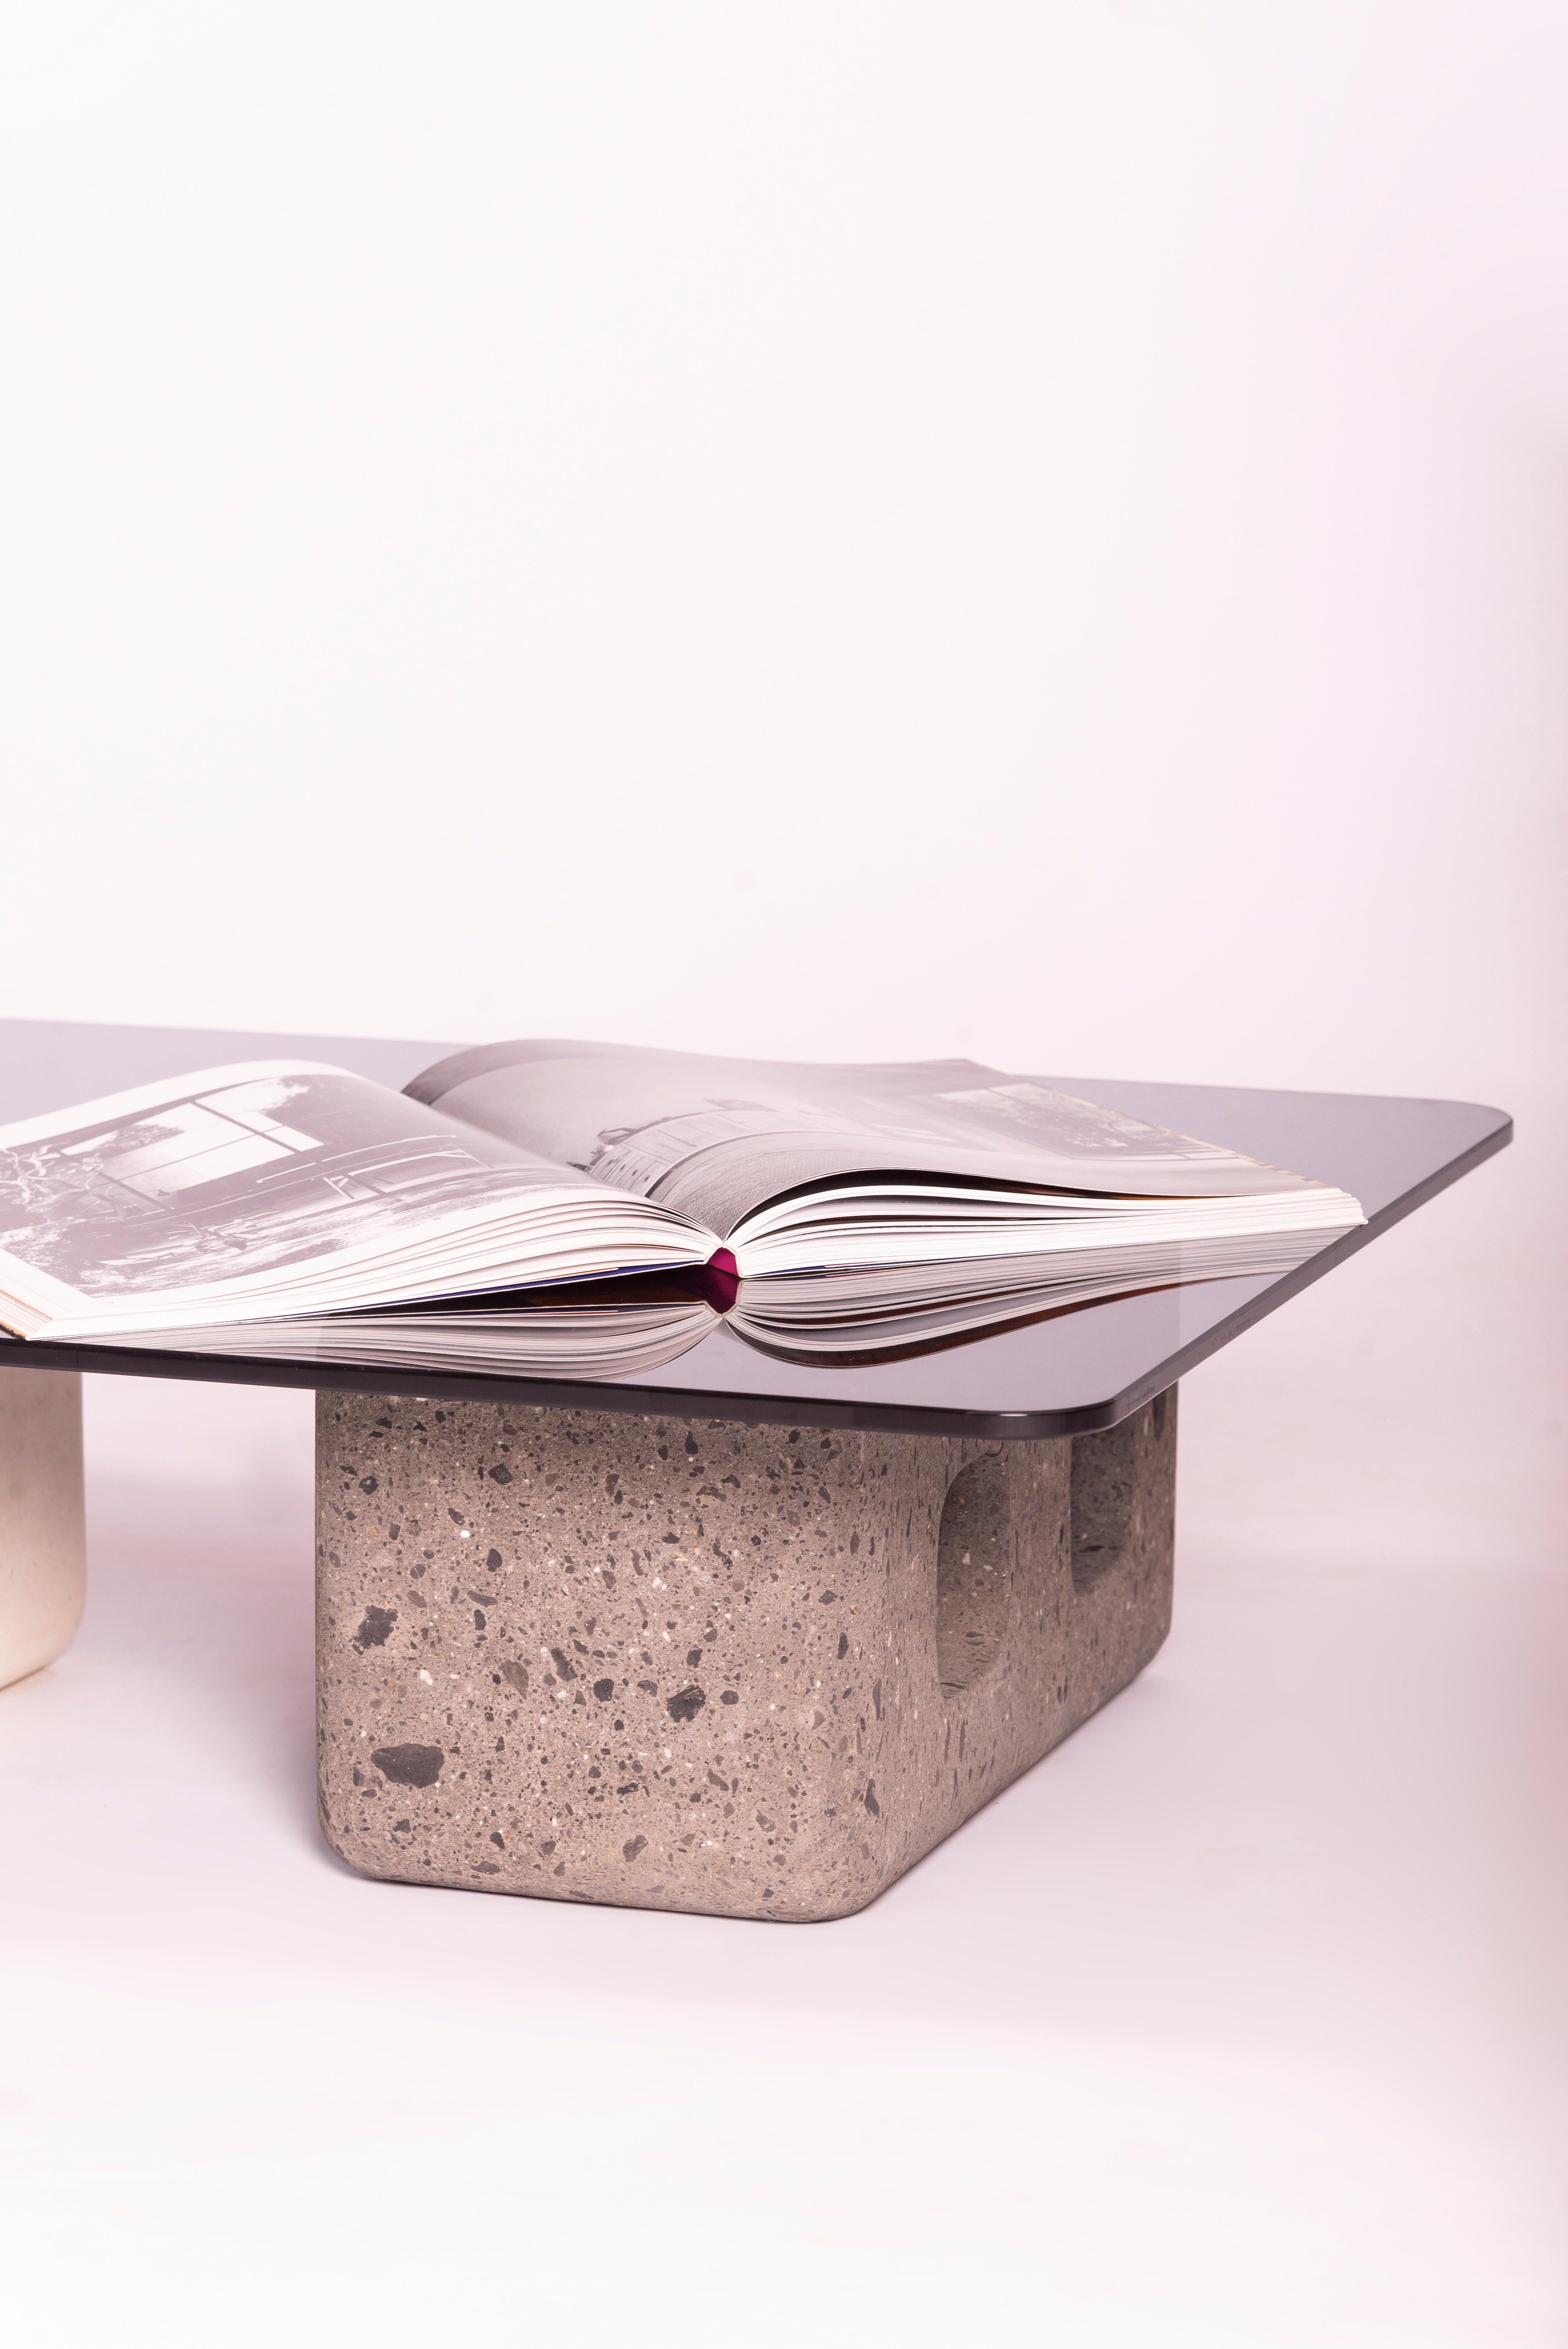 Der Blocks Couchtisch wurde durch den Baukontext in Mexiko inspiriert, eine Neuinterpretation eines authentischen Multitasking-Tisches der mexikanischen Arbeiter: gegossene Blöcke und eine Platte aus mehreren Materialien. Diese Stücke werden von